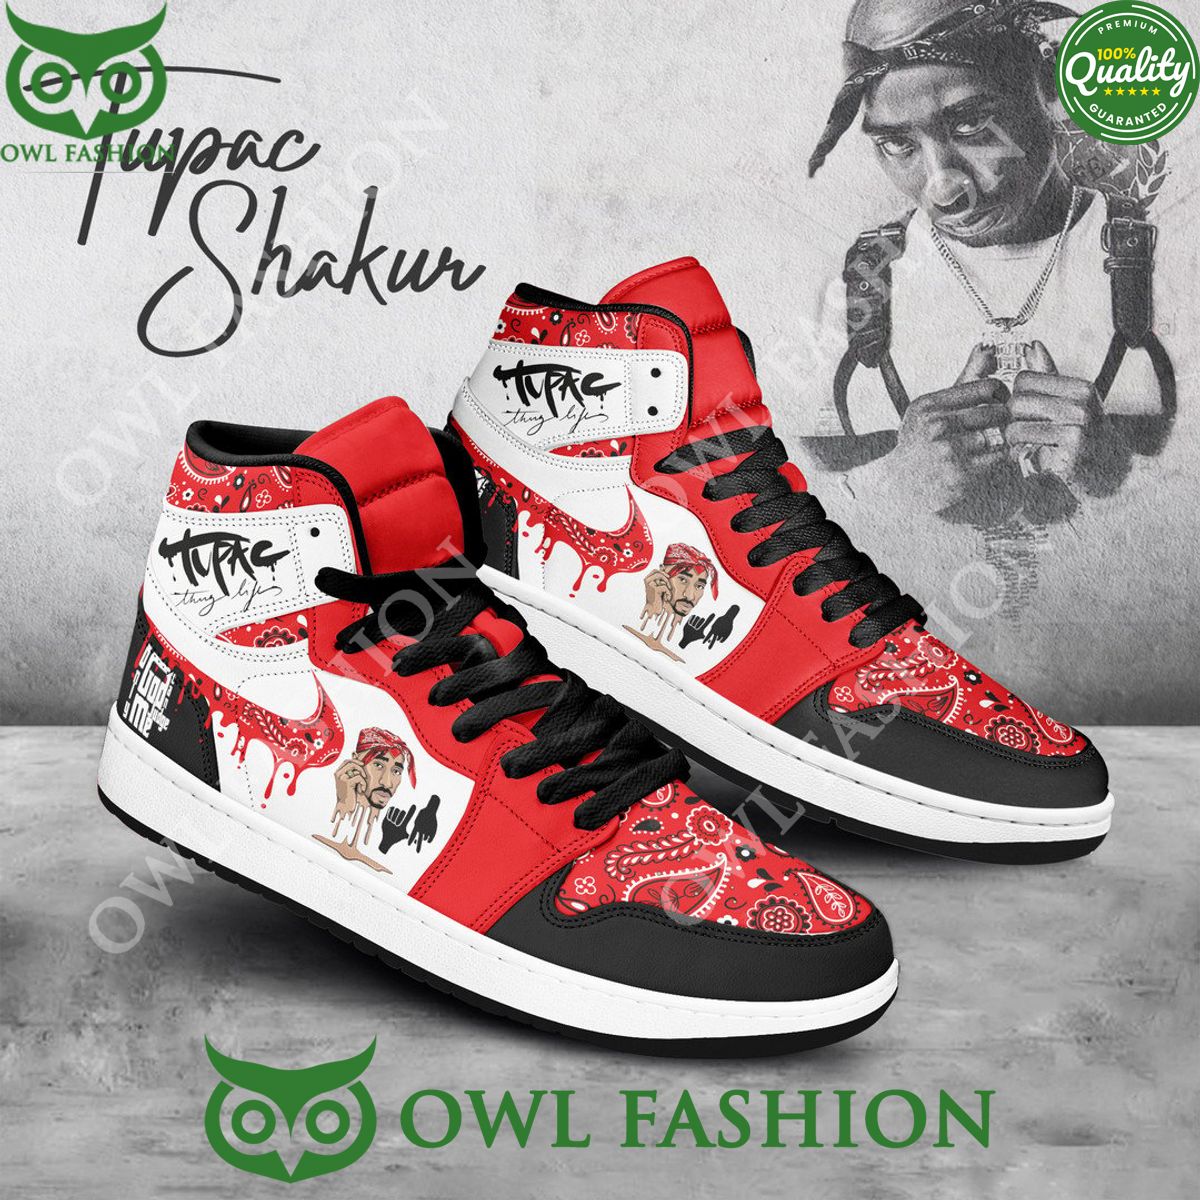 Tupac shakur American rapper Only God can Judge Me Air Jordan Sneaker